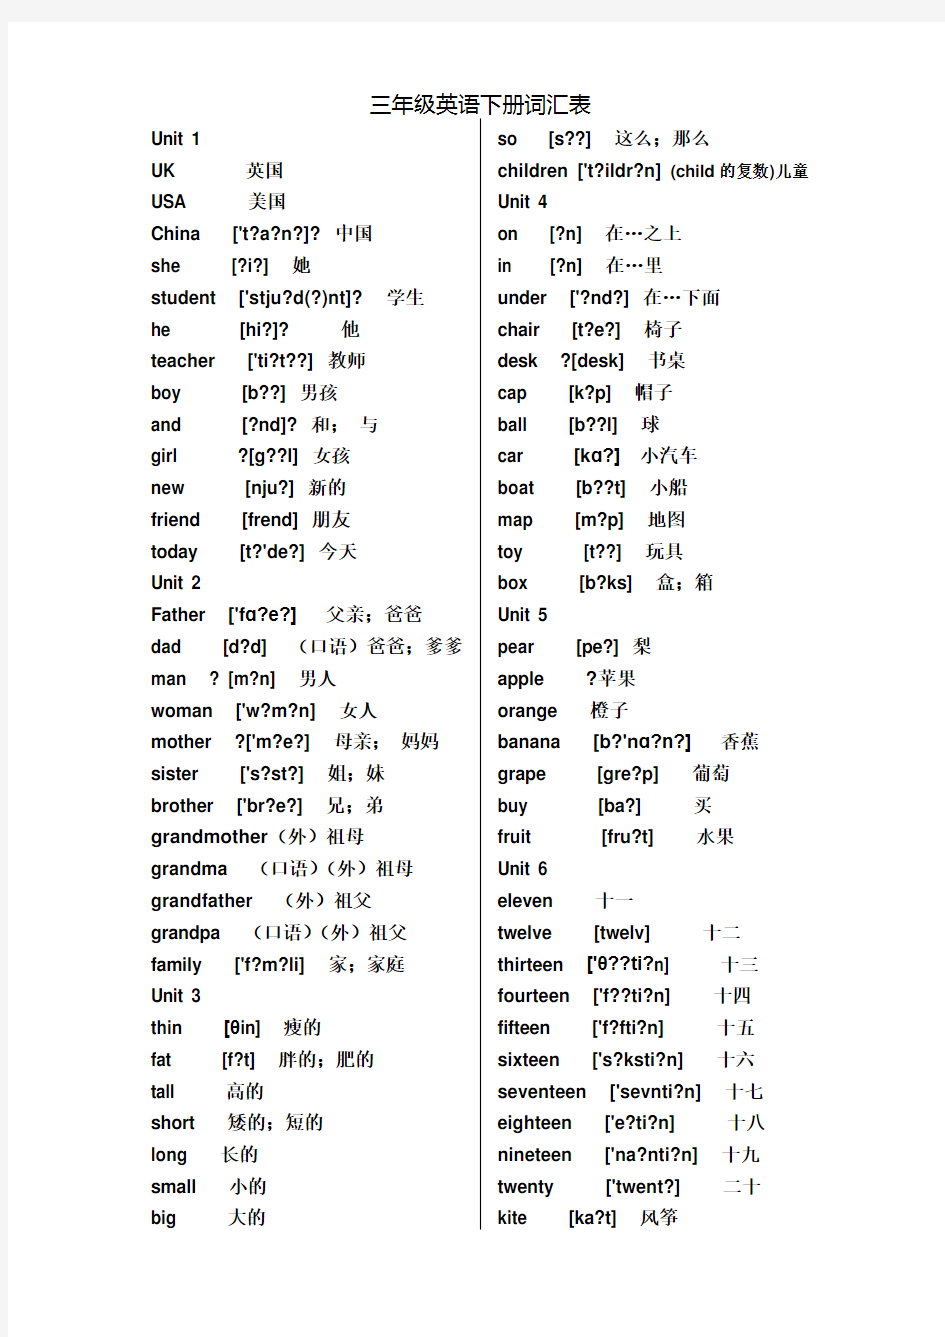 新版PEP小学英语级单词表打印